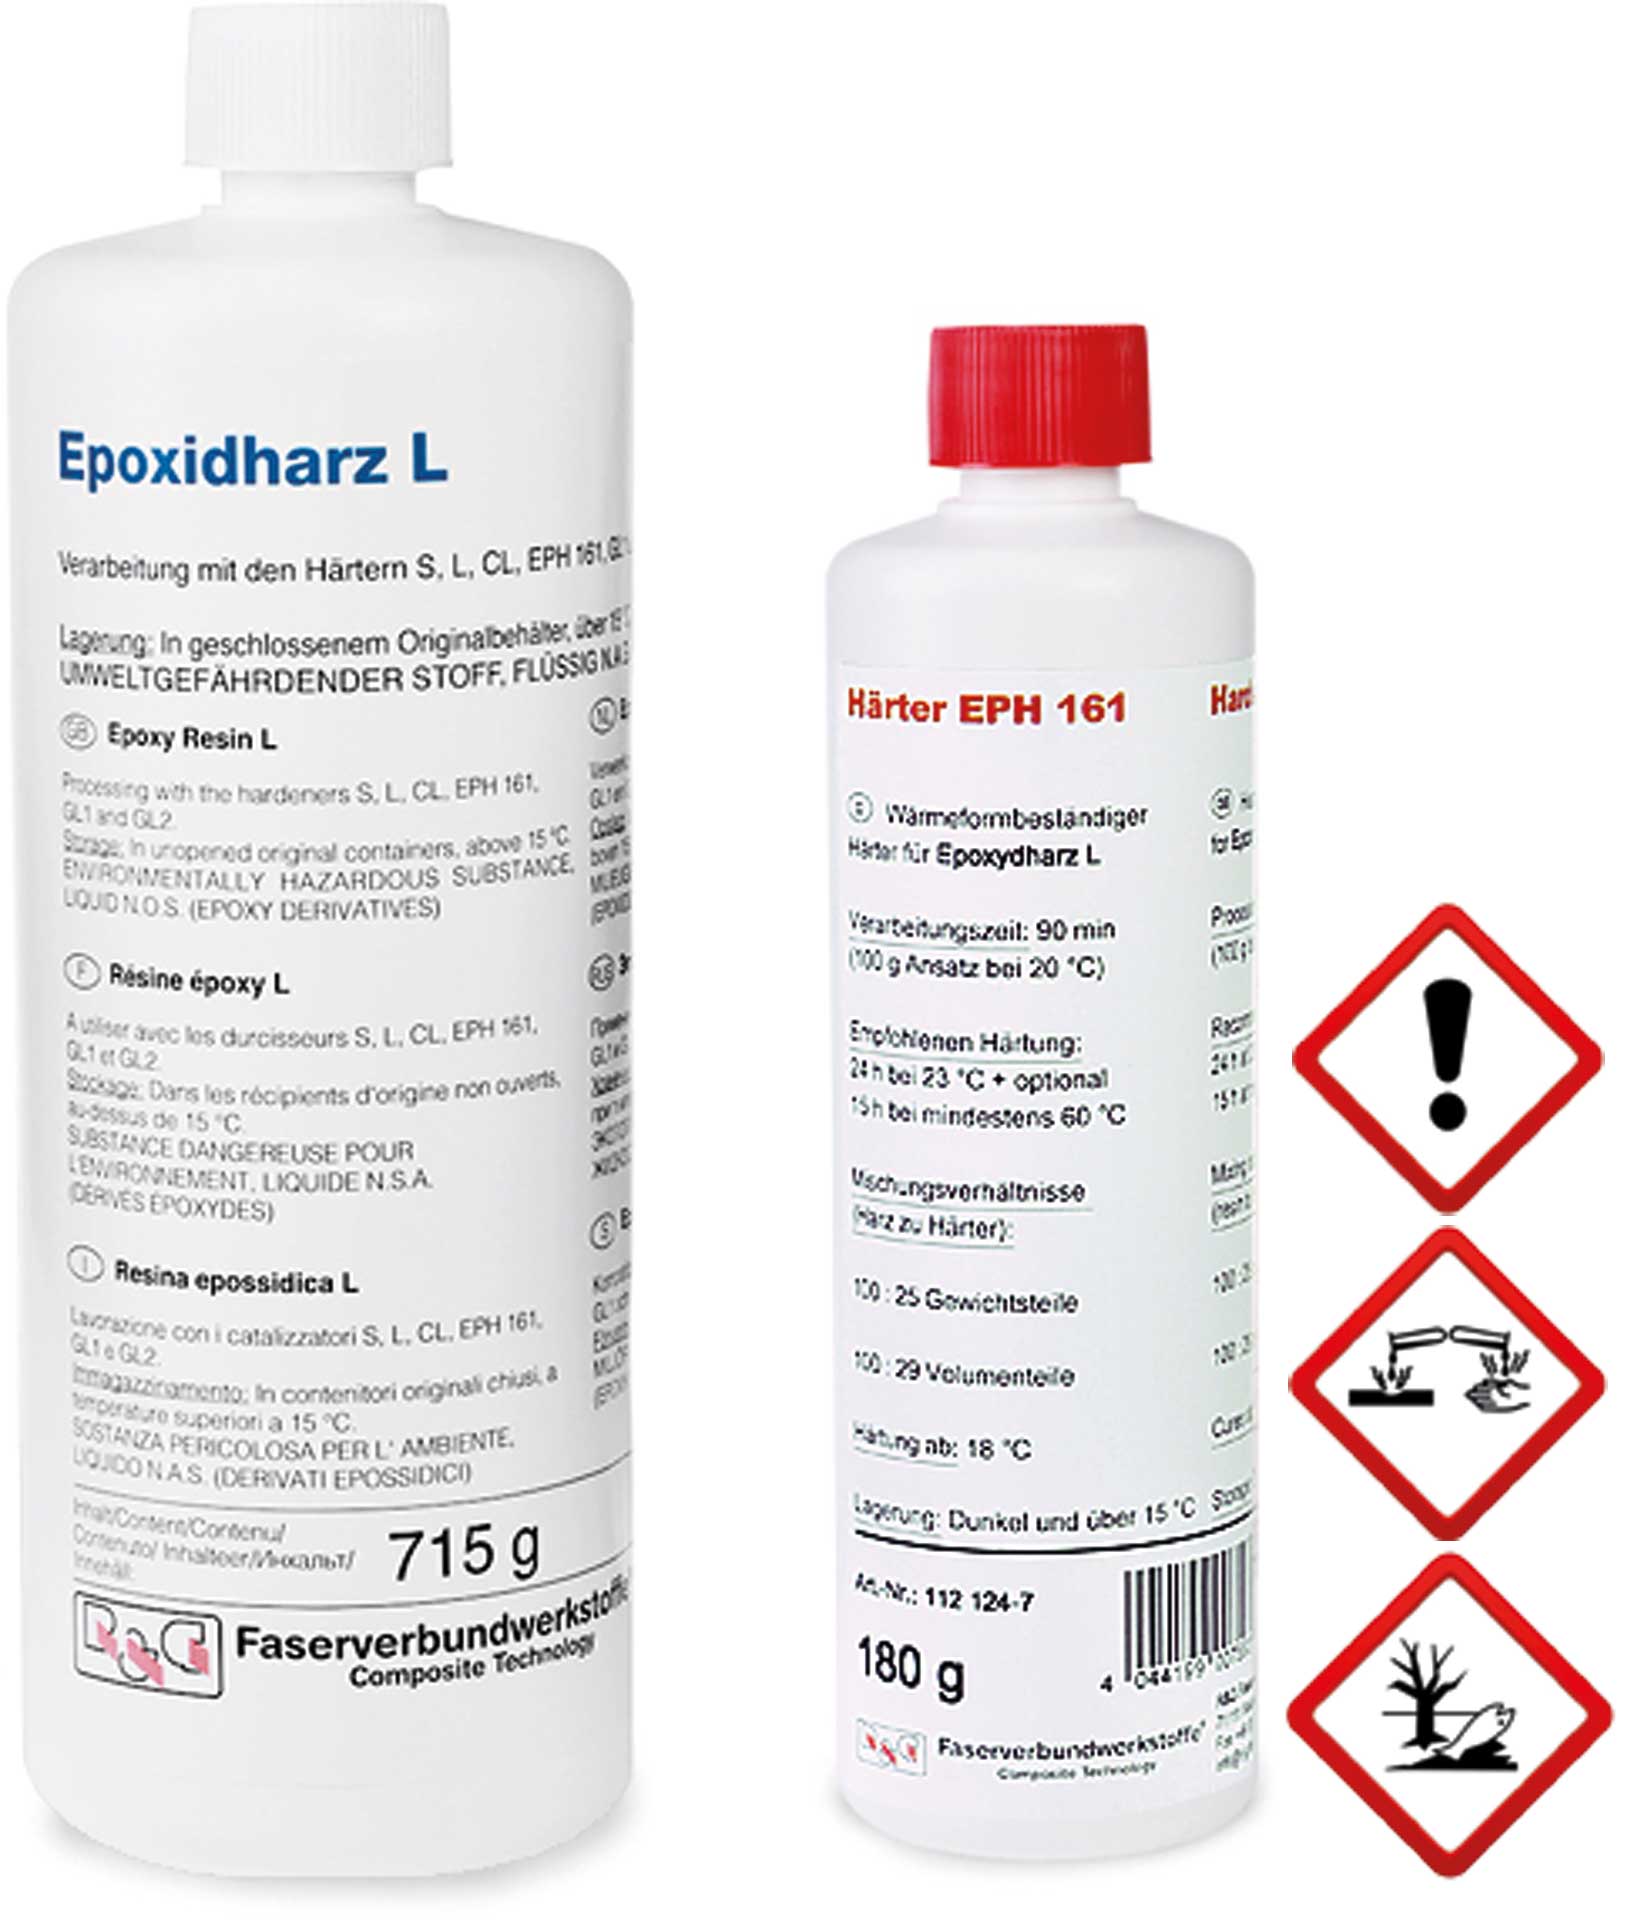 R&G Epoxidharz L + Härter EPH 161 (90 Min.) Packung/ 895 g